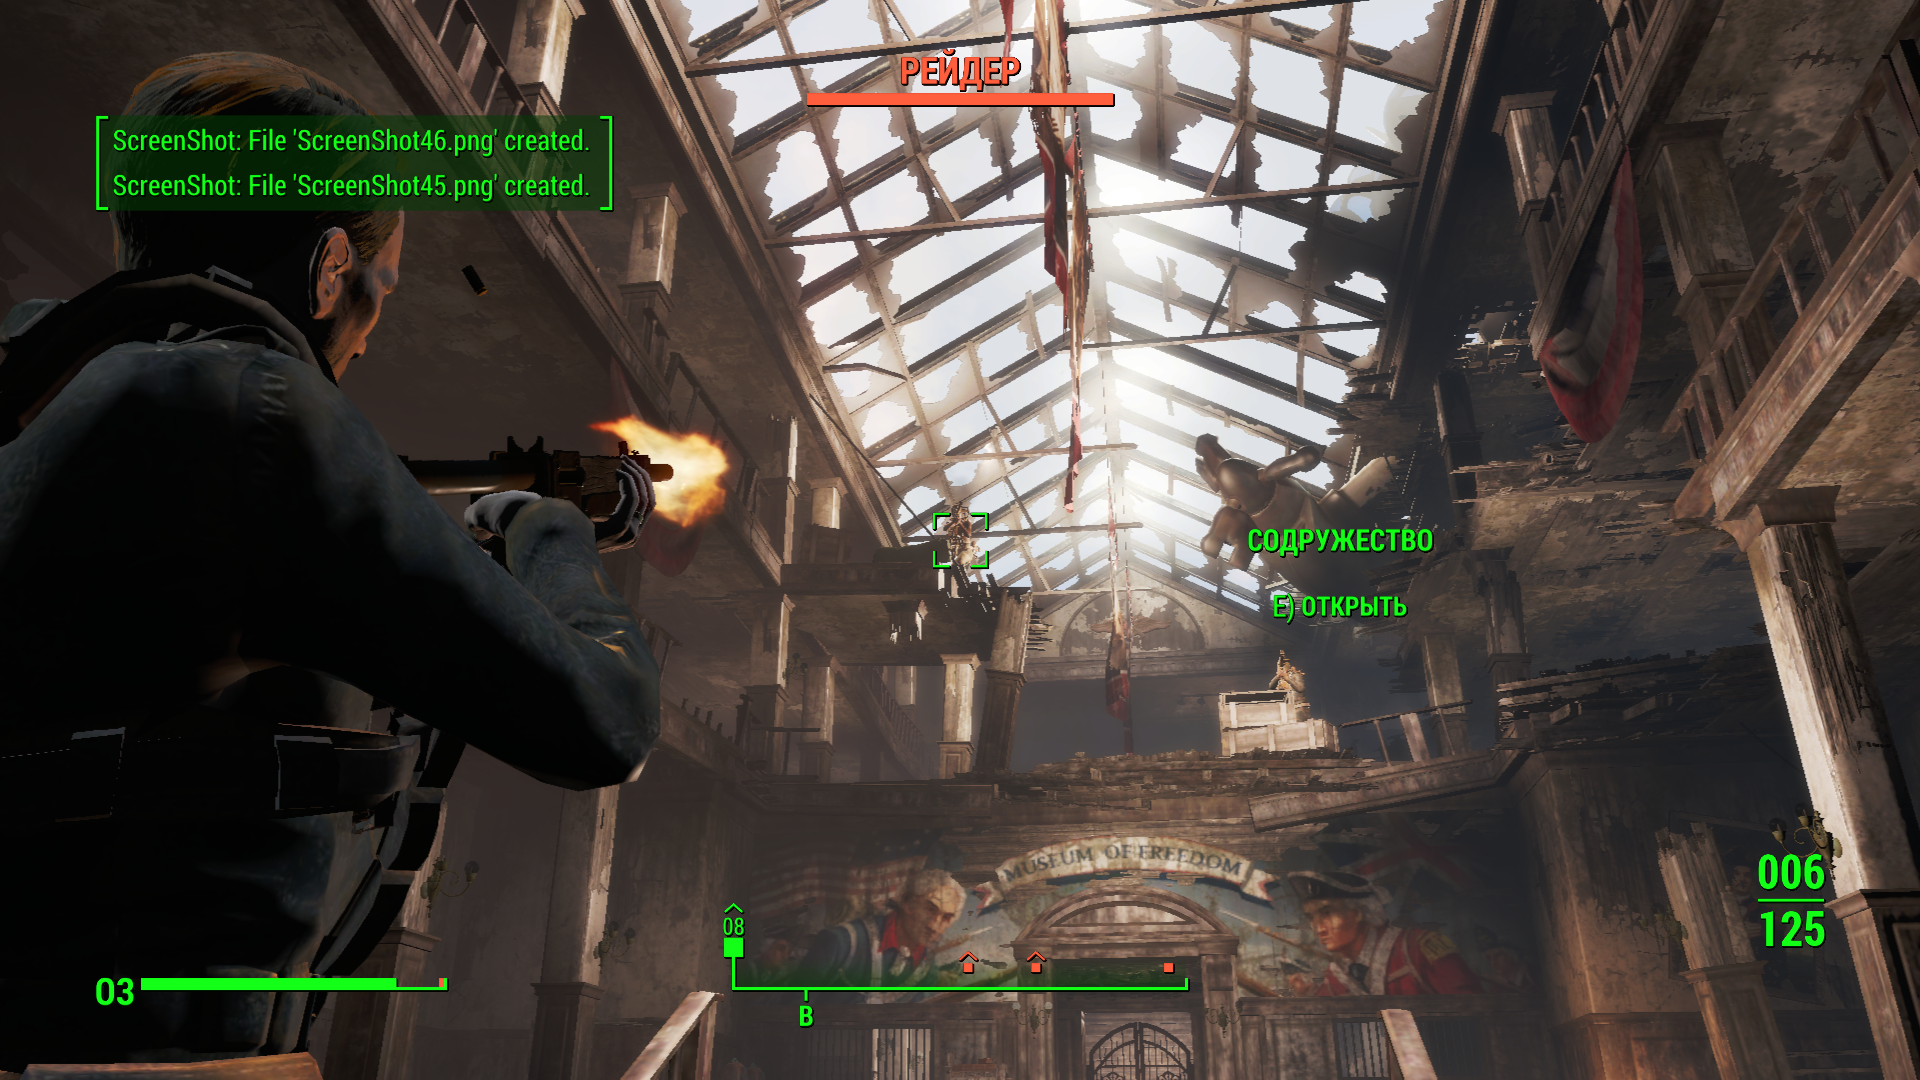 Полный обзор игры Fallout 4 от iGamesWorld: Почему Fallout 4 хорош?